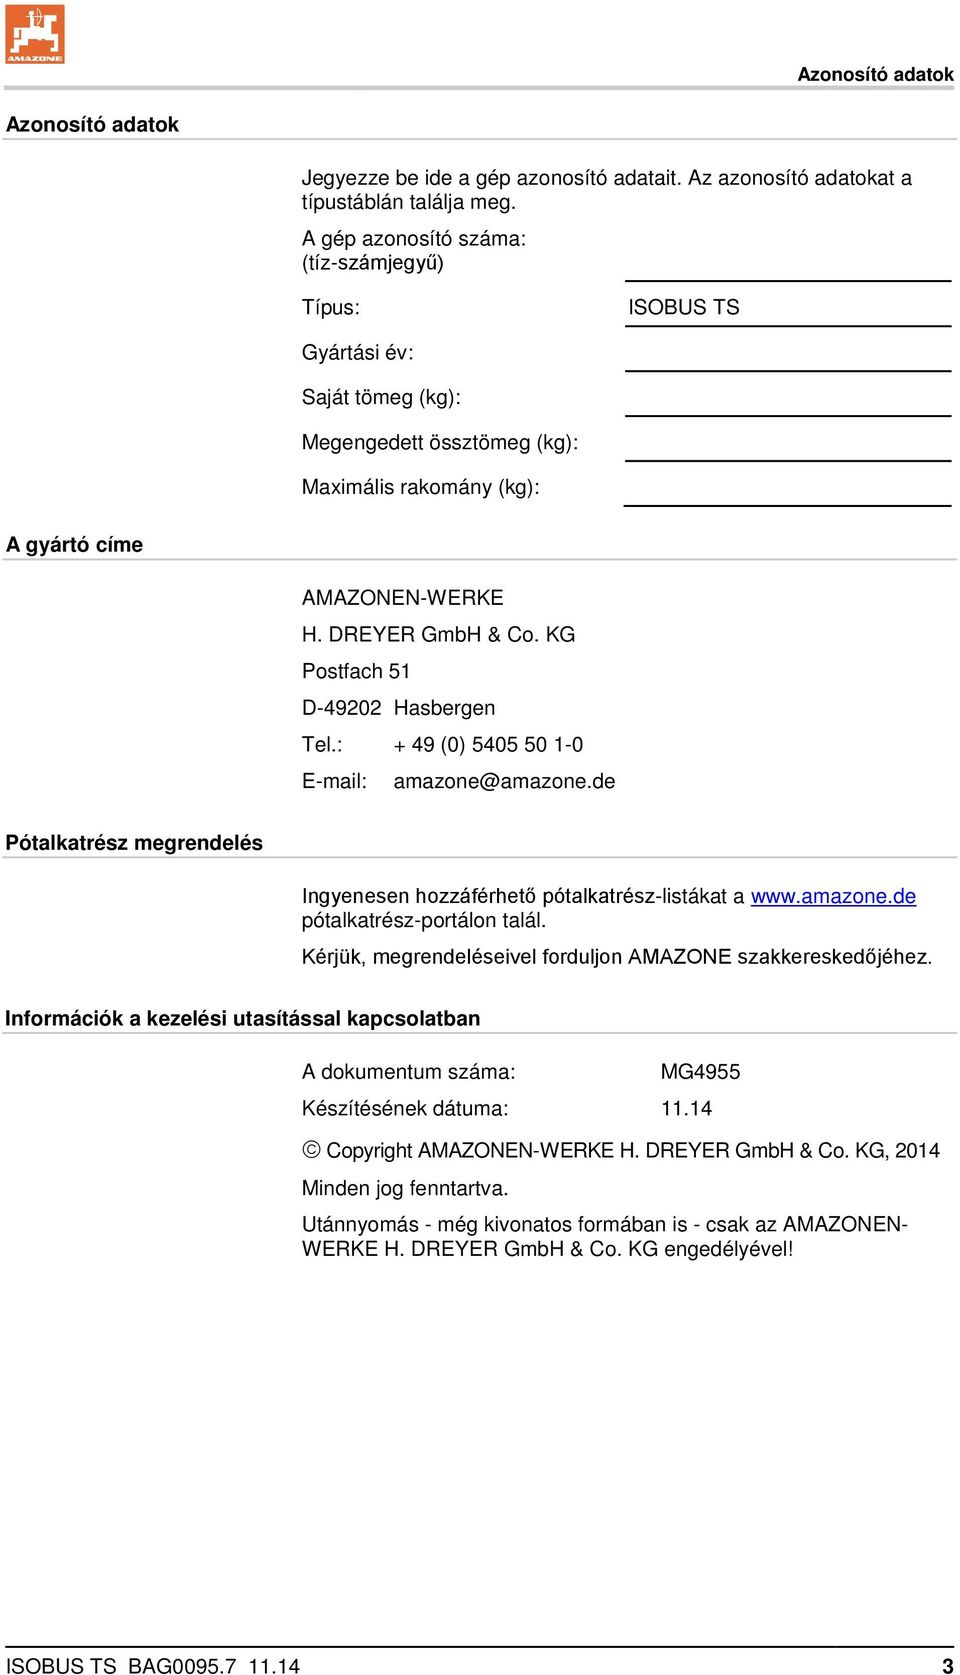 KG Postfach 51 D-49202 Hasbergen Tel.: + 49 (0) 5405 50 1-0 E-mail: amazone@amazone.de Pótalkatrész megrendelés Ingyenesen hozzáférhető pótalkatrész-listákat a www.amazone.de pótalkatrész-portálon talál.